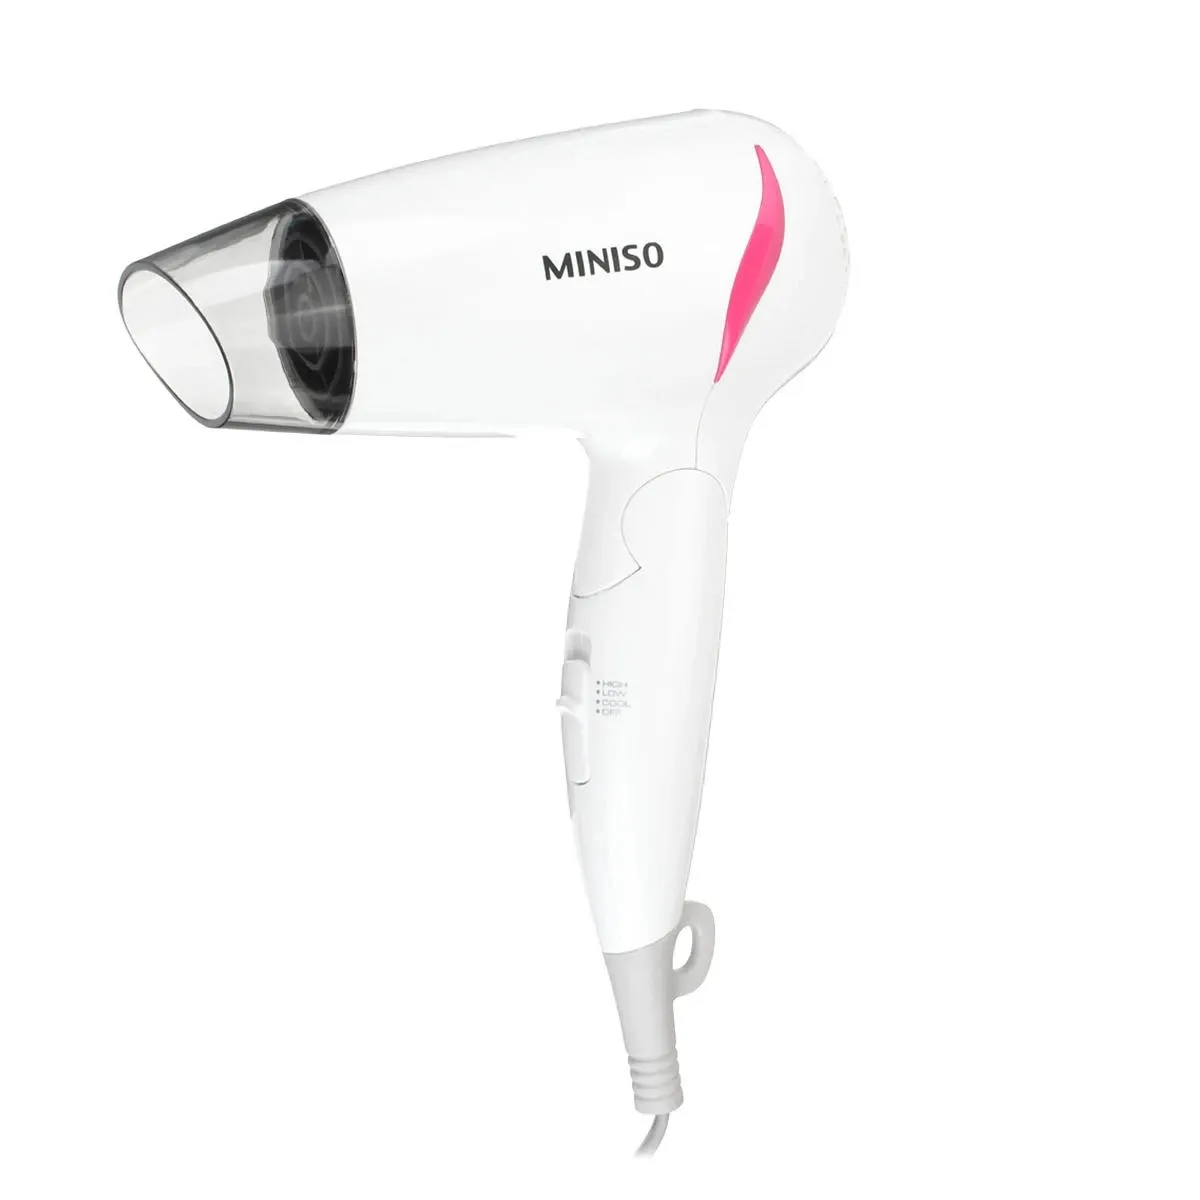 MINISO 1400W Asciugacapelli portatile pieghevole Asciugacapelli Mini strumenti per capelli leggeri